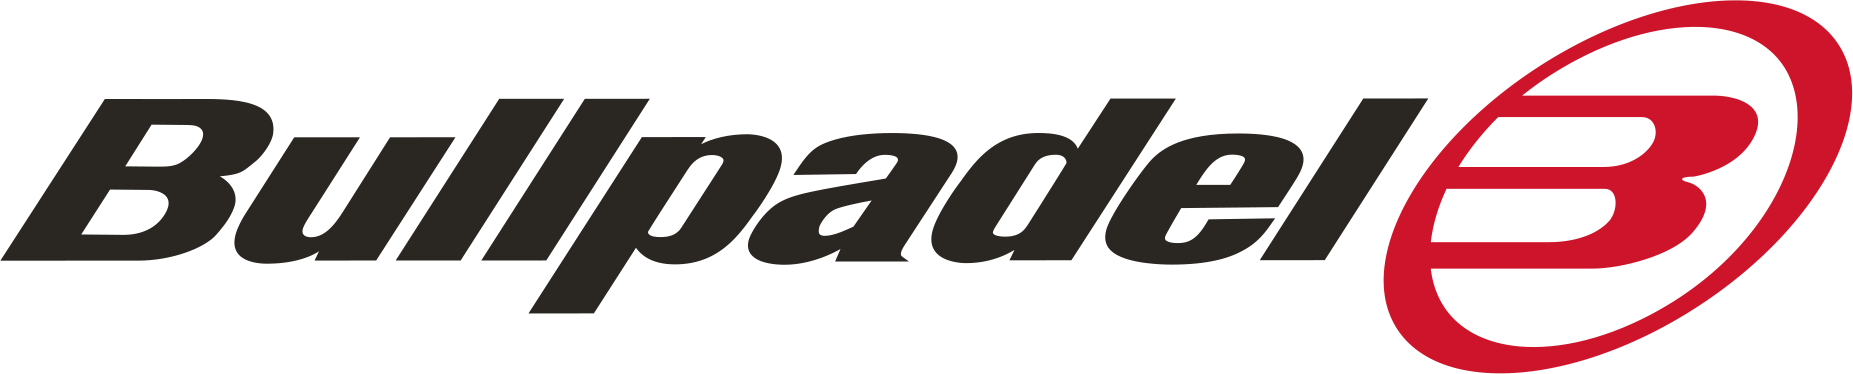 Padel Expansion Group AB logotyp